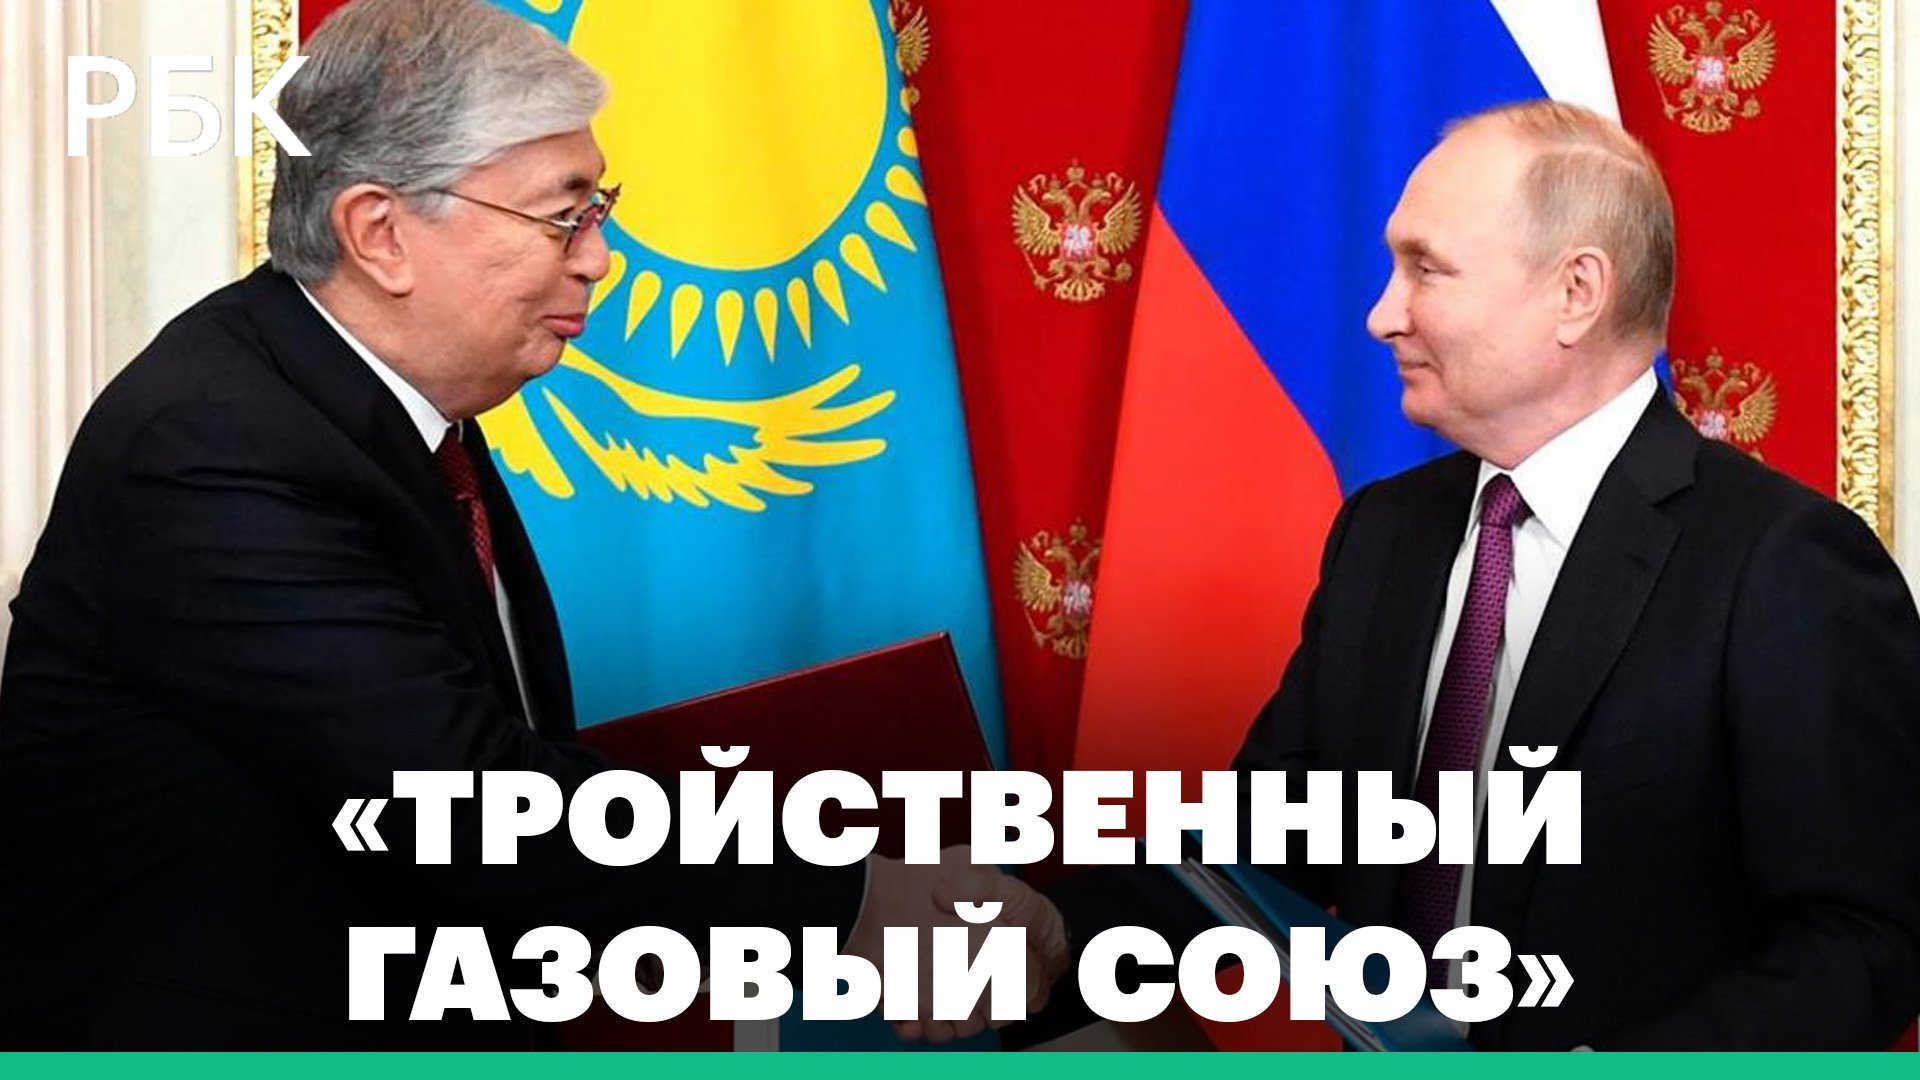 Газовый союз между Россией, Казахстаном и Узбекистаном